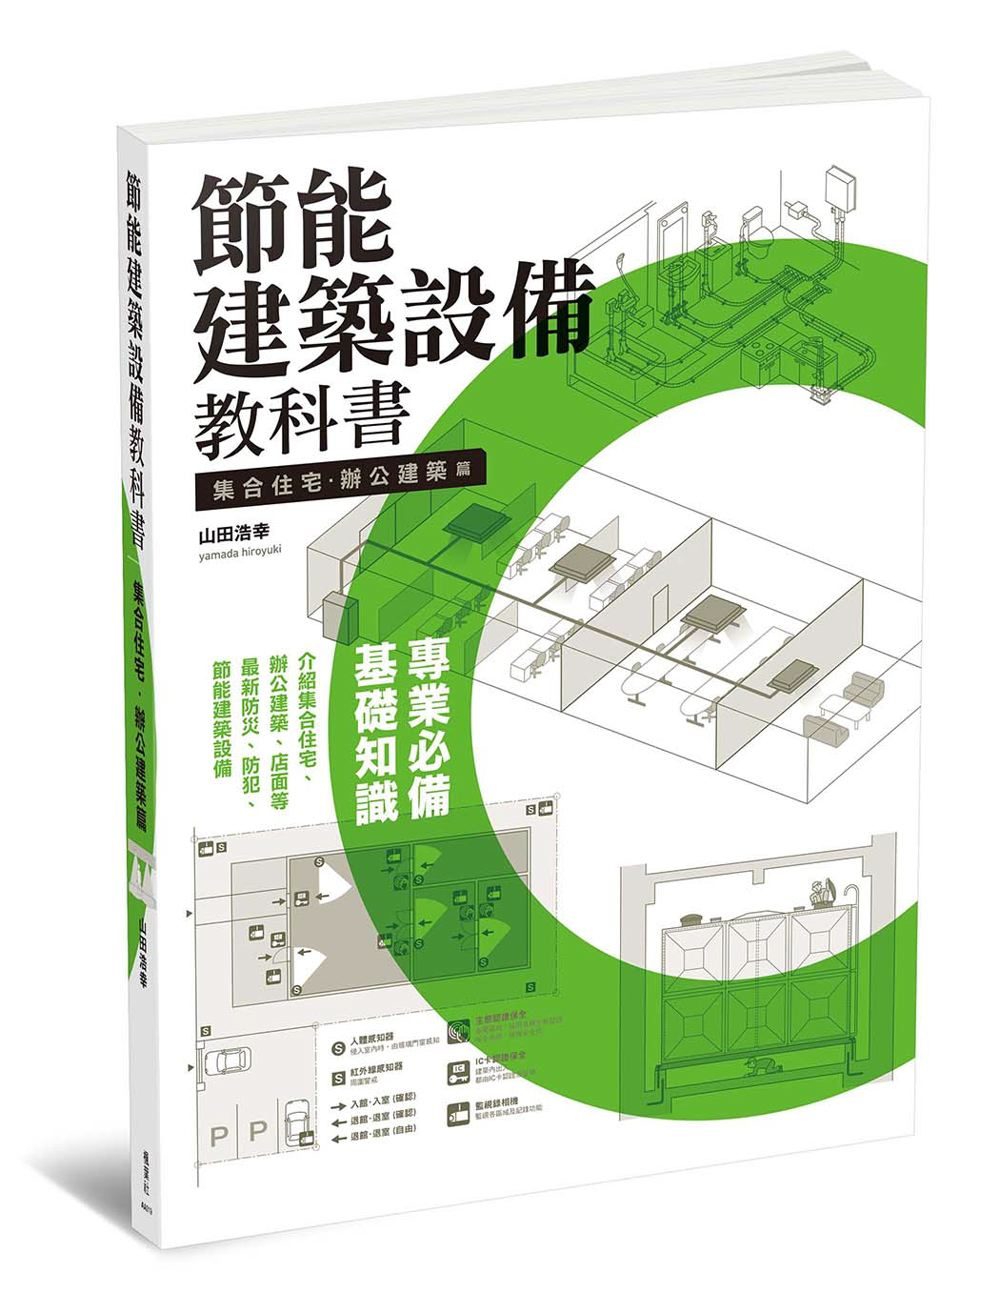 節能建築設備教科書